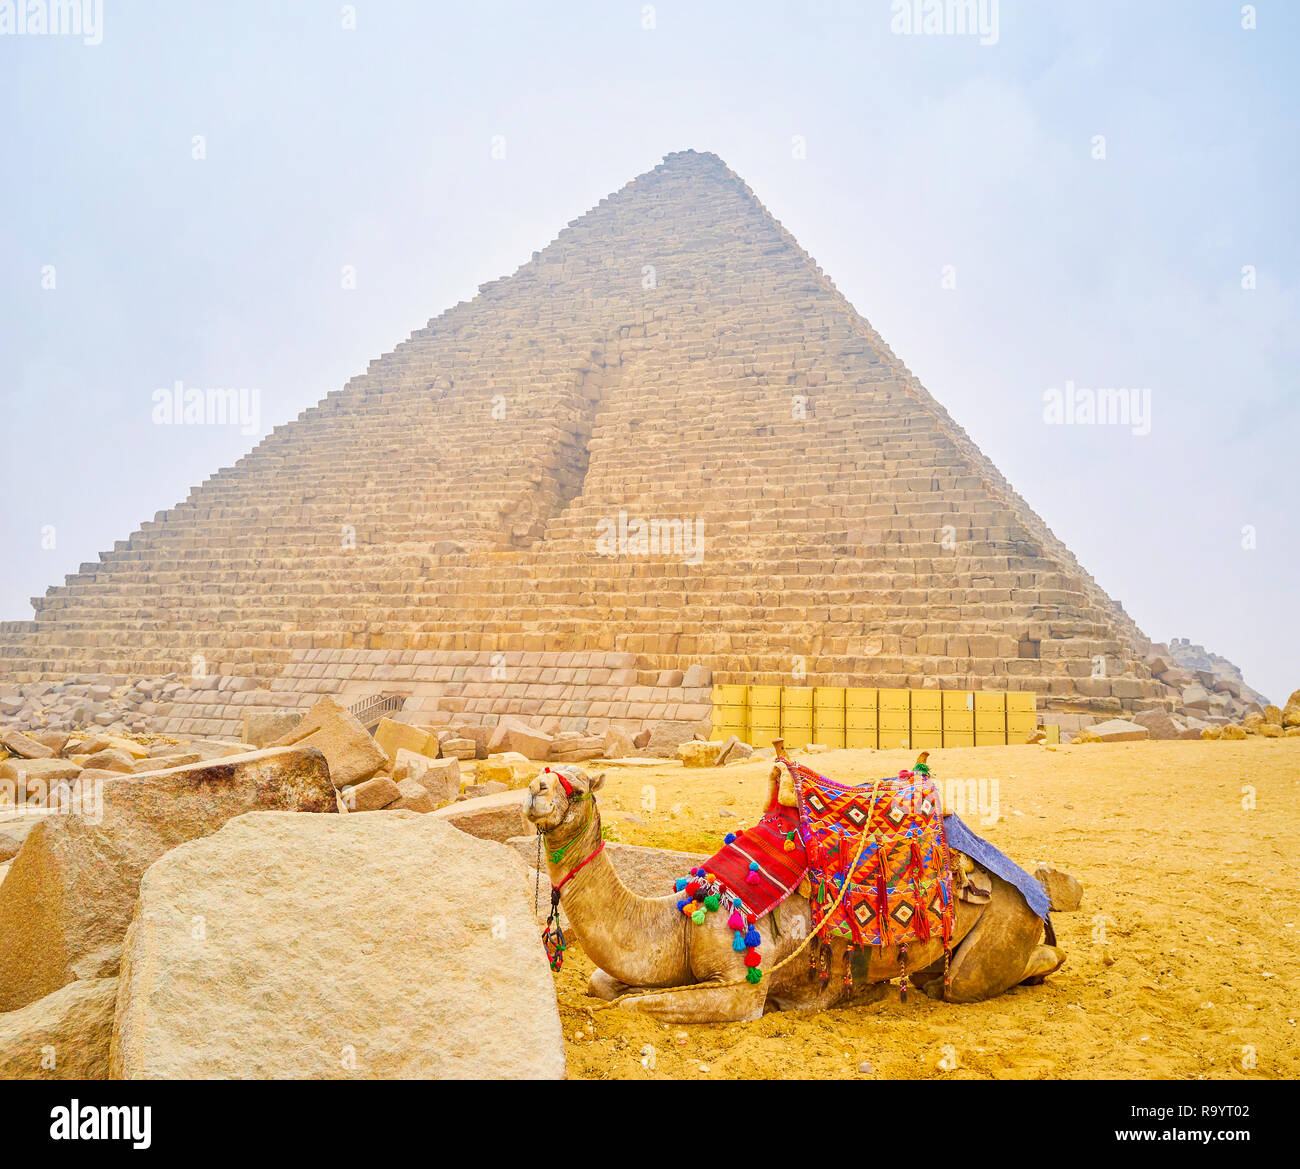 Le chameau harnaché avec selle en style bédouin traditionnel se trouve au côté de vestiges de pierre la pyramide de Gizeh, Egypte Banque D'Images